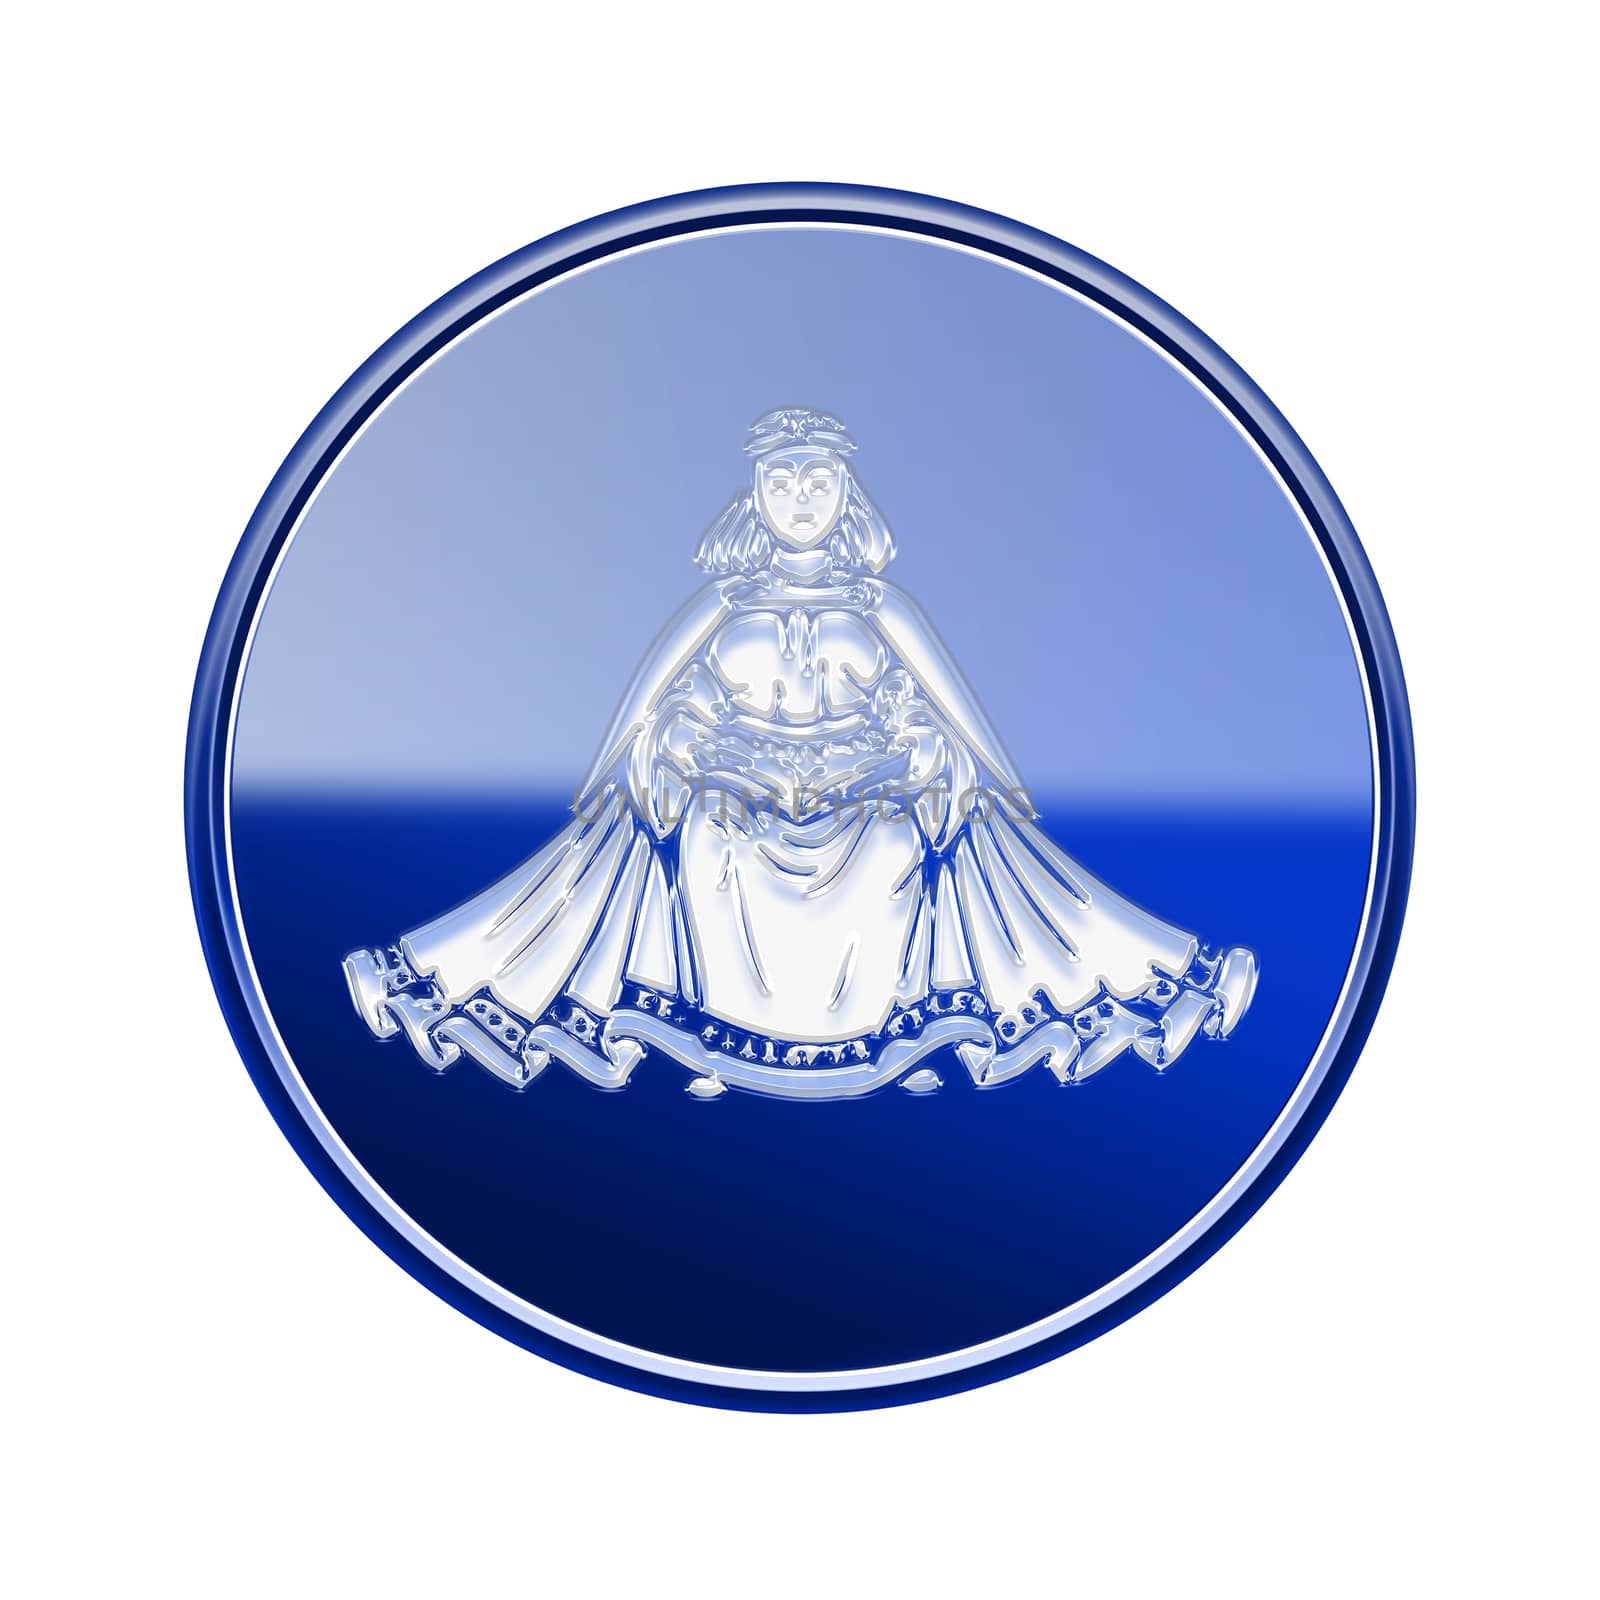 Virgo zodiac icon blue, isolated on white background